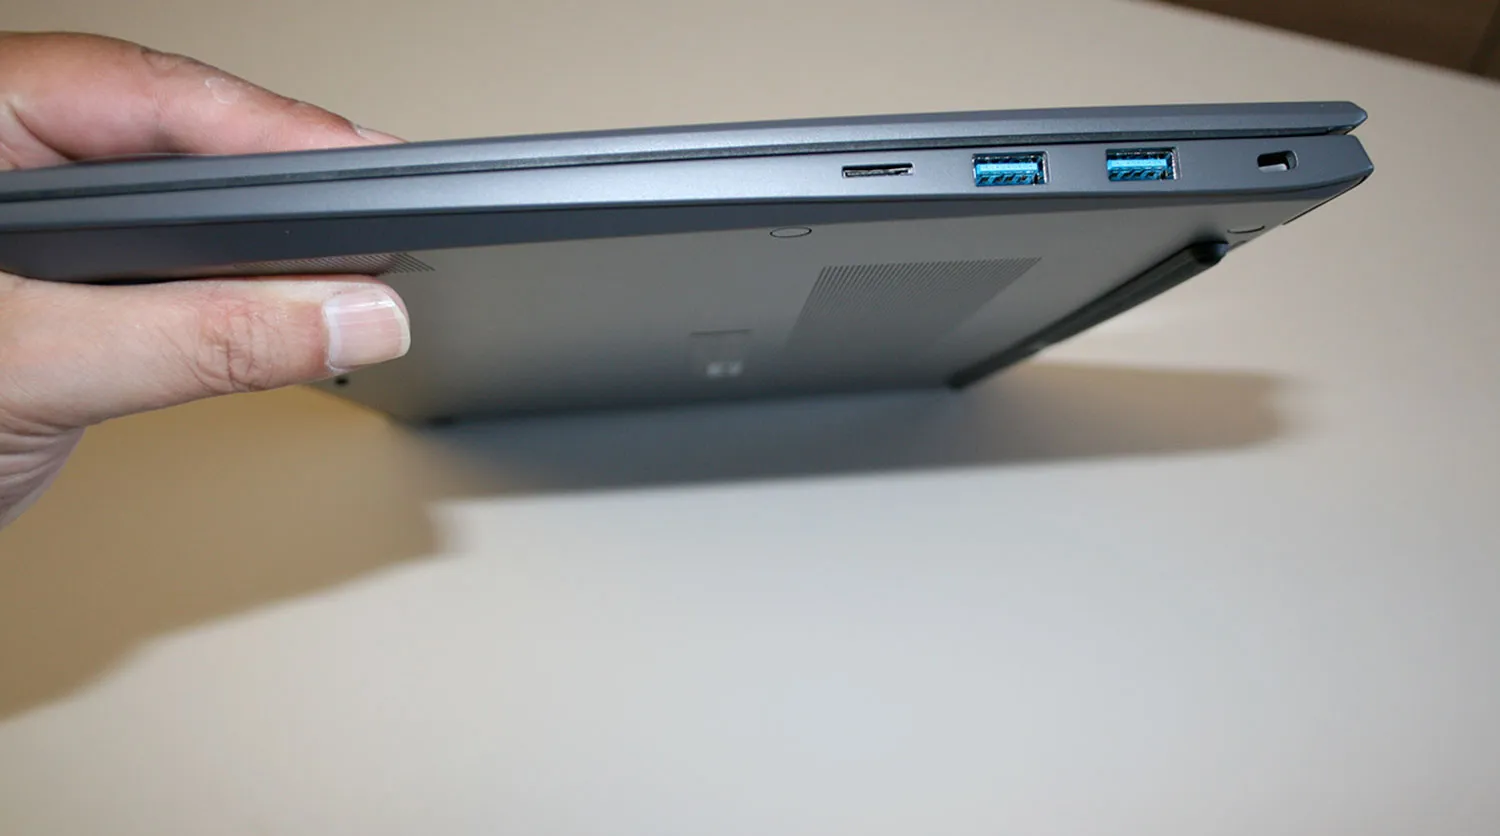 Recensione Notebook LG Gram 17Z90R, ultraleggero con display 17"